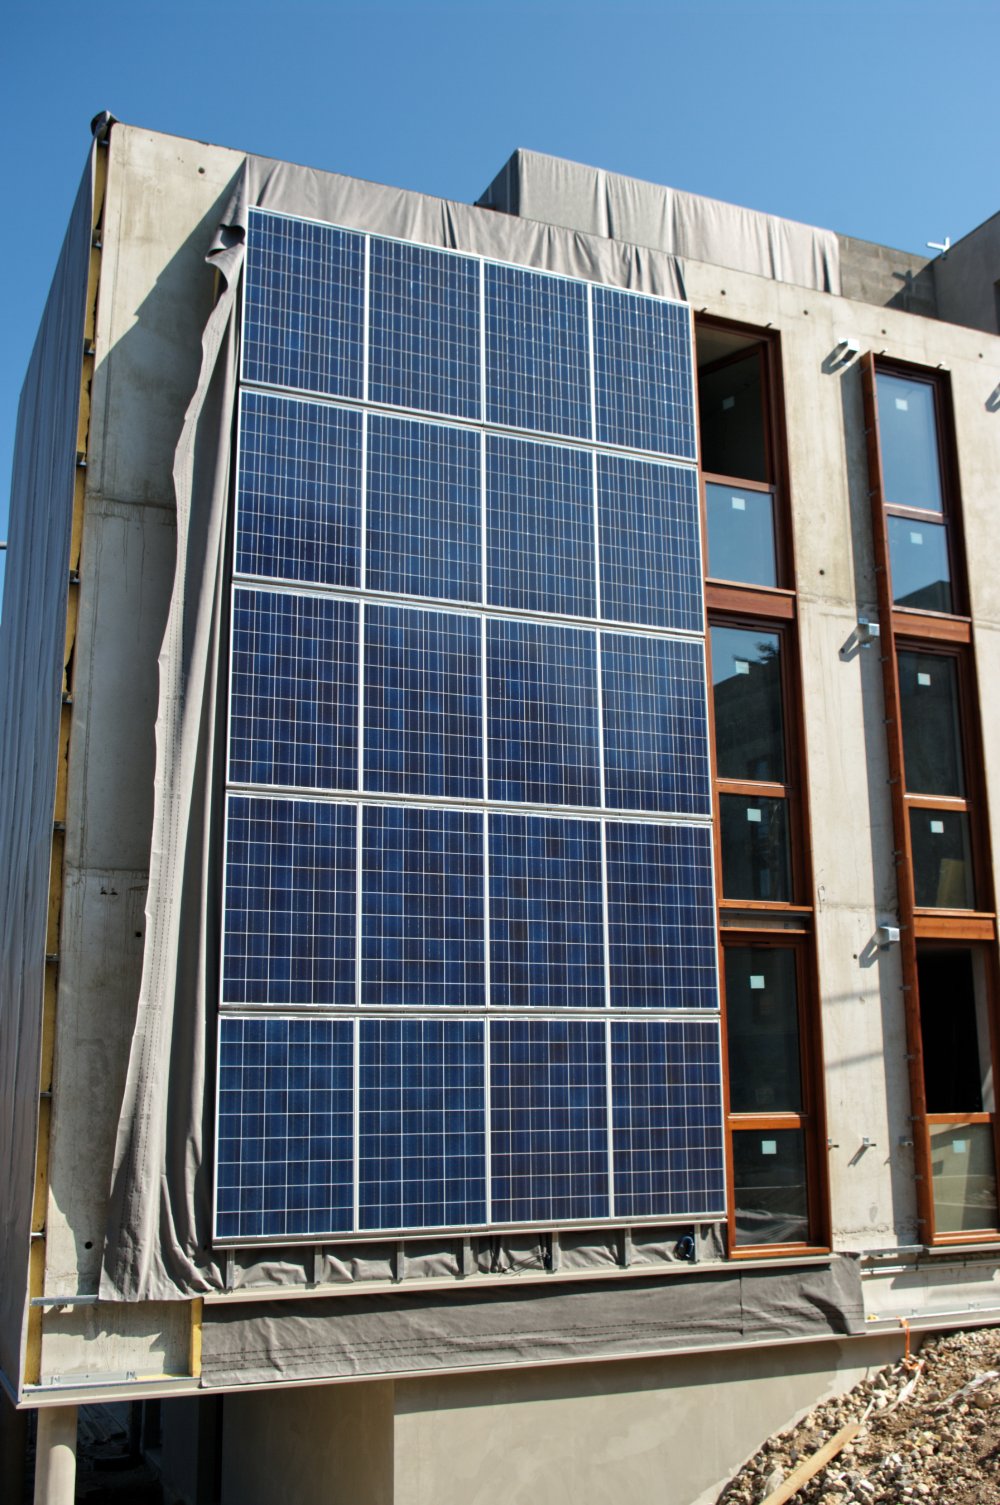 Photovoltaic Glazing as Building Facades